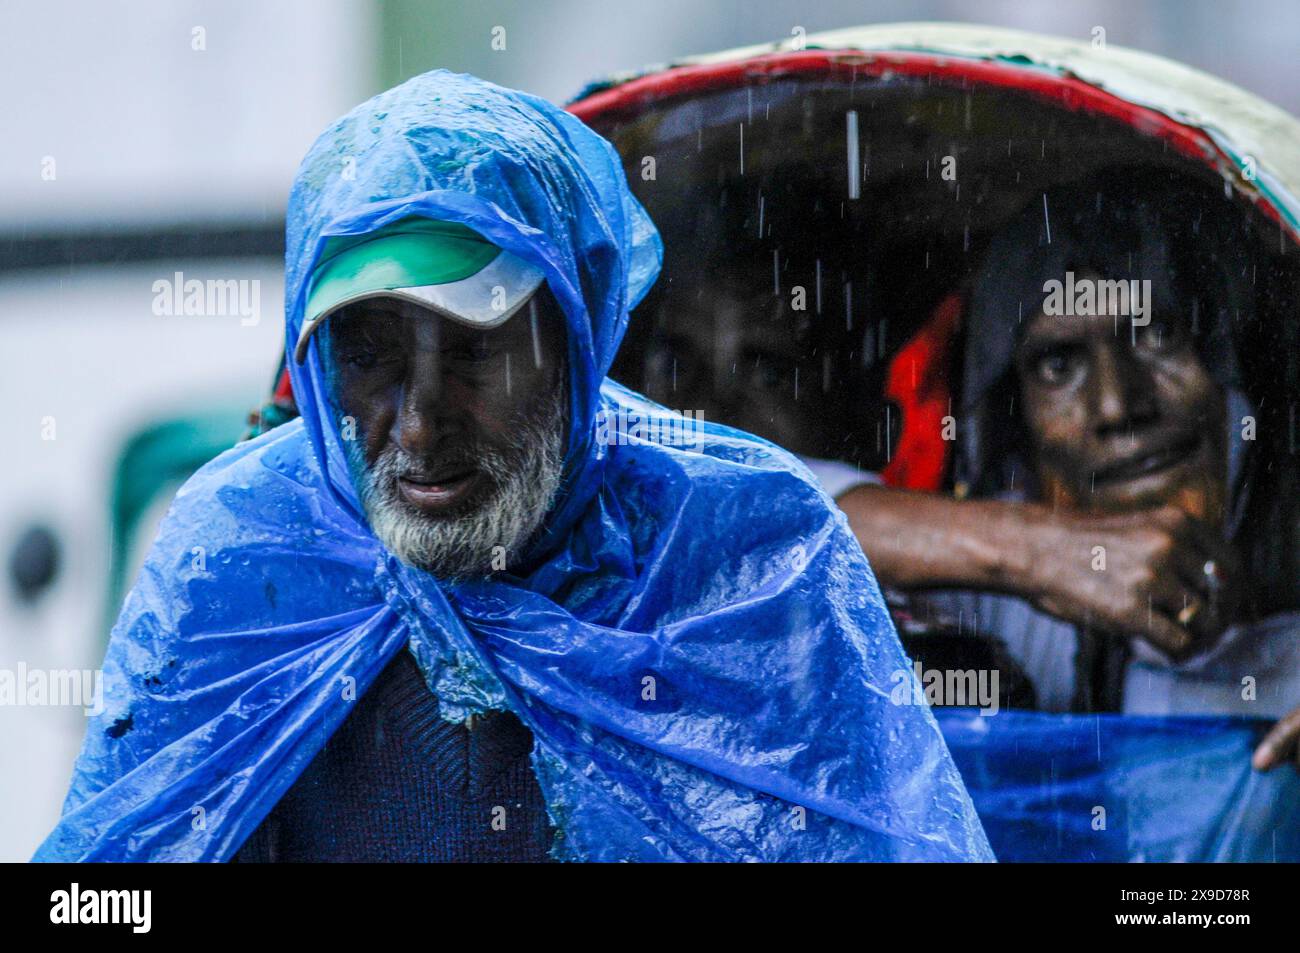 Fußgänger, die durch überflutete Straßen in Sylhet wegen Zyklon Remal navigieren. In den letzten Tagen im ganzen Land haben starke Regenfälle stattgefunden, und die Küstengebiete haben erhebliche Schäden erlitten. Sylhet, Bangladesch. Stockfoto